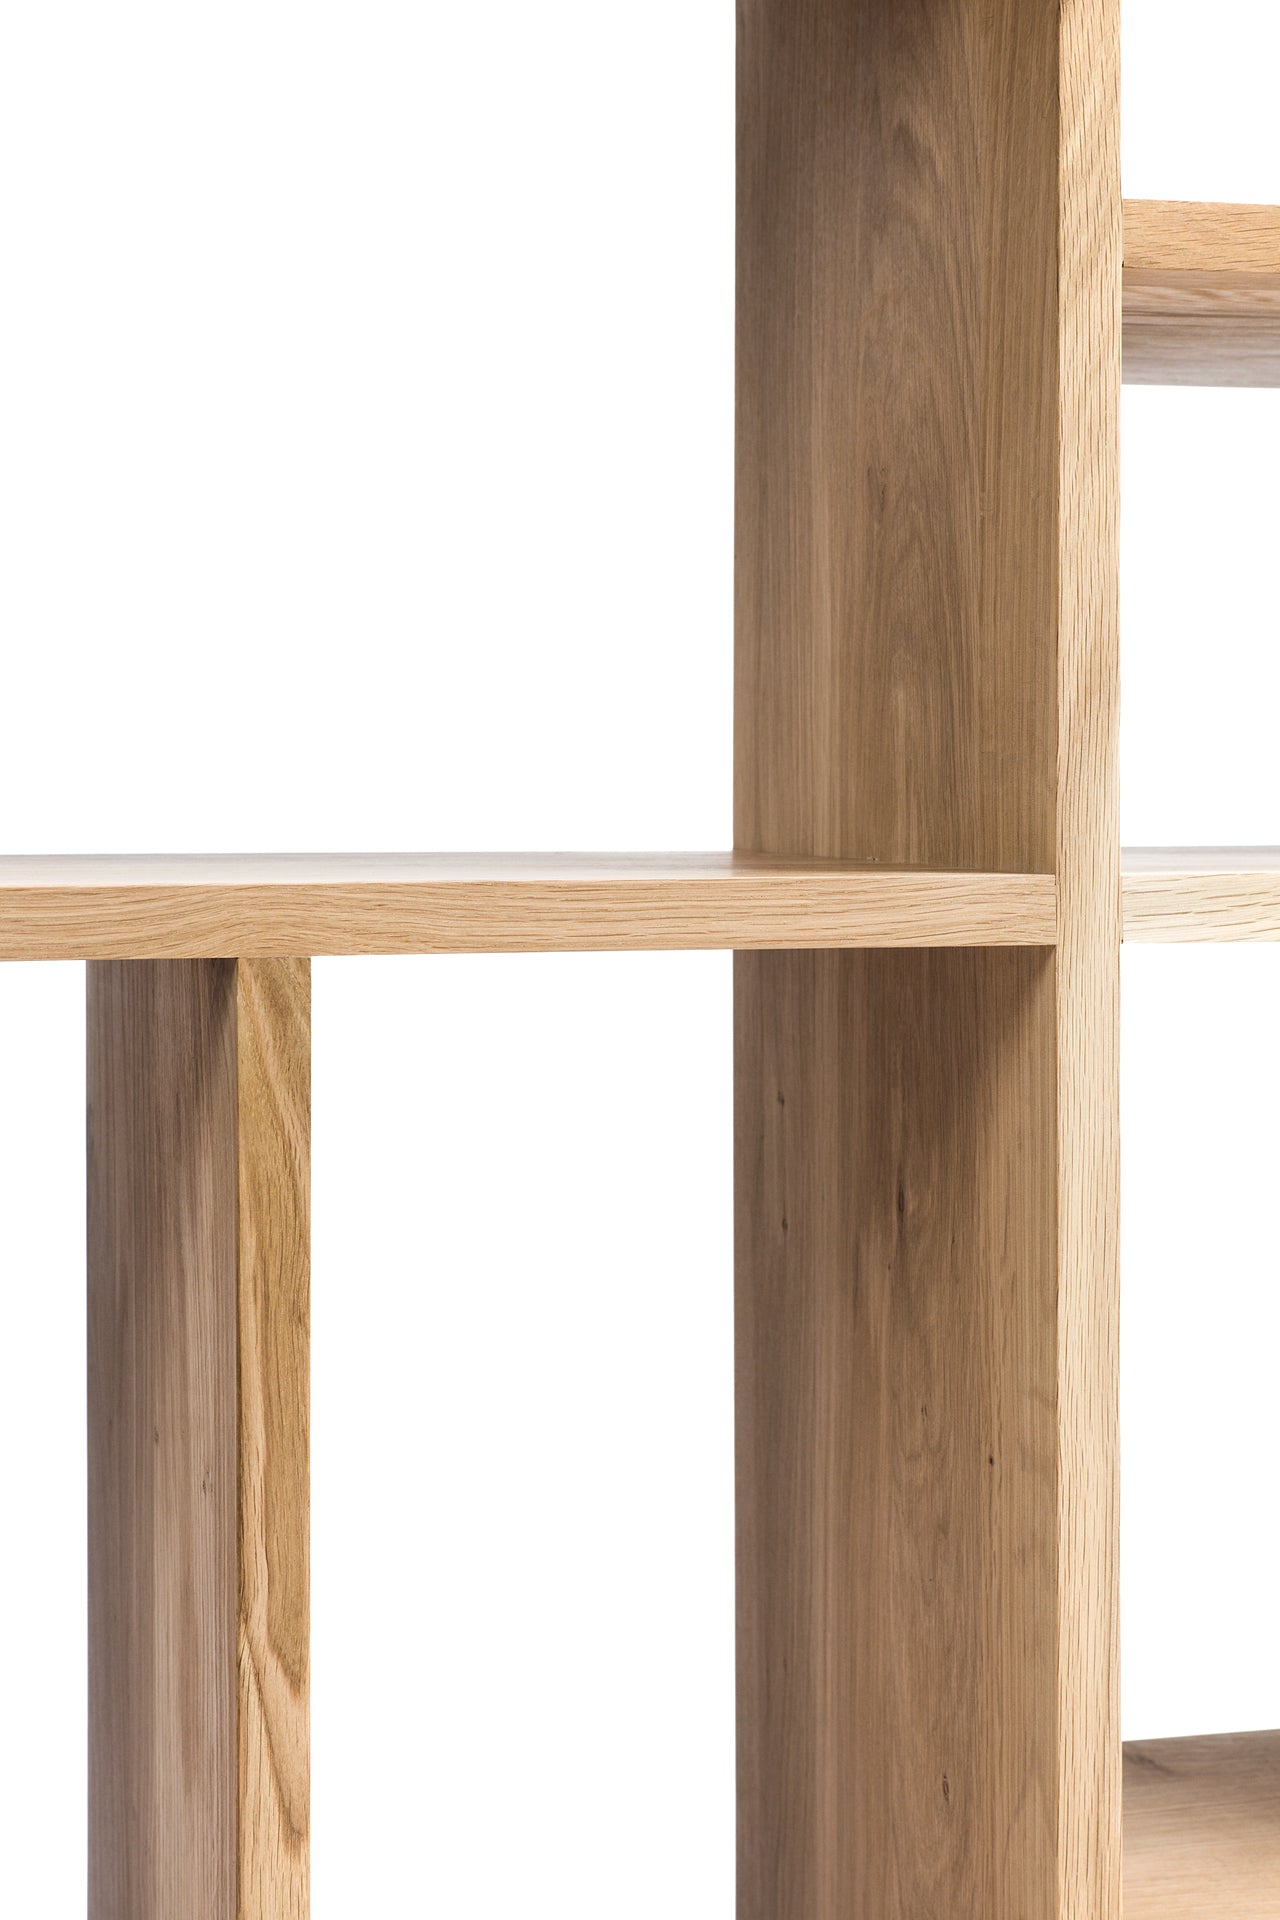 比利時原裝進口實木傢俬 - 收納系列 - 橡木M形置物架